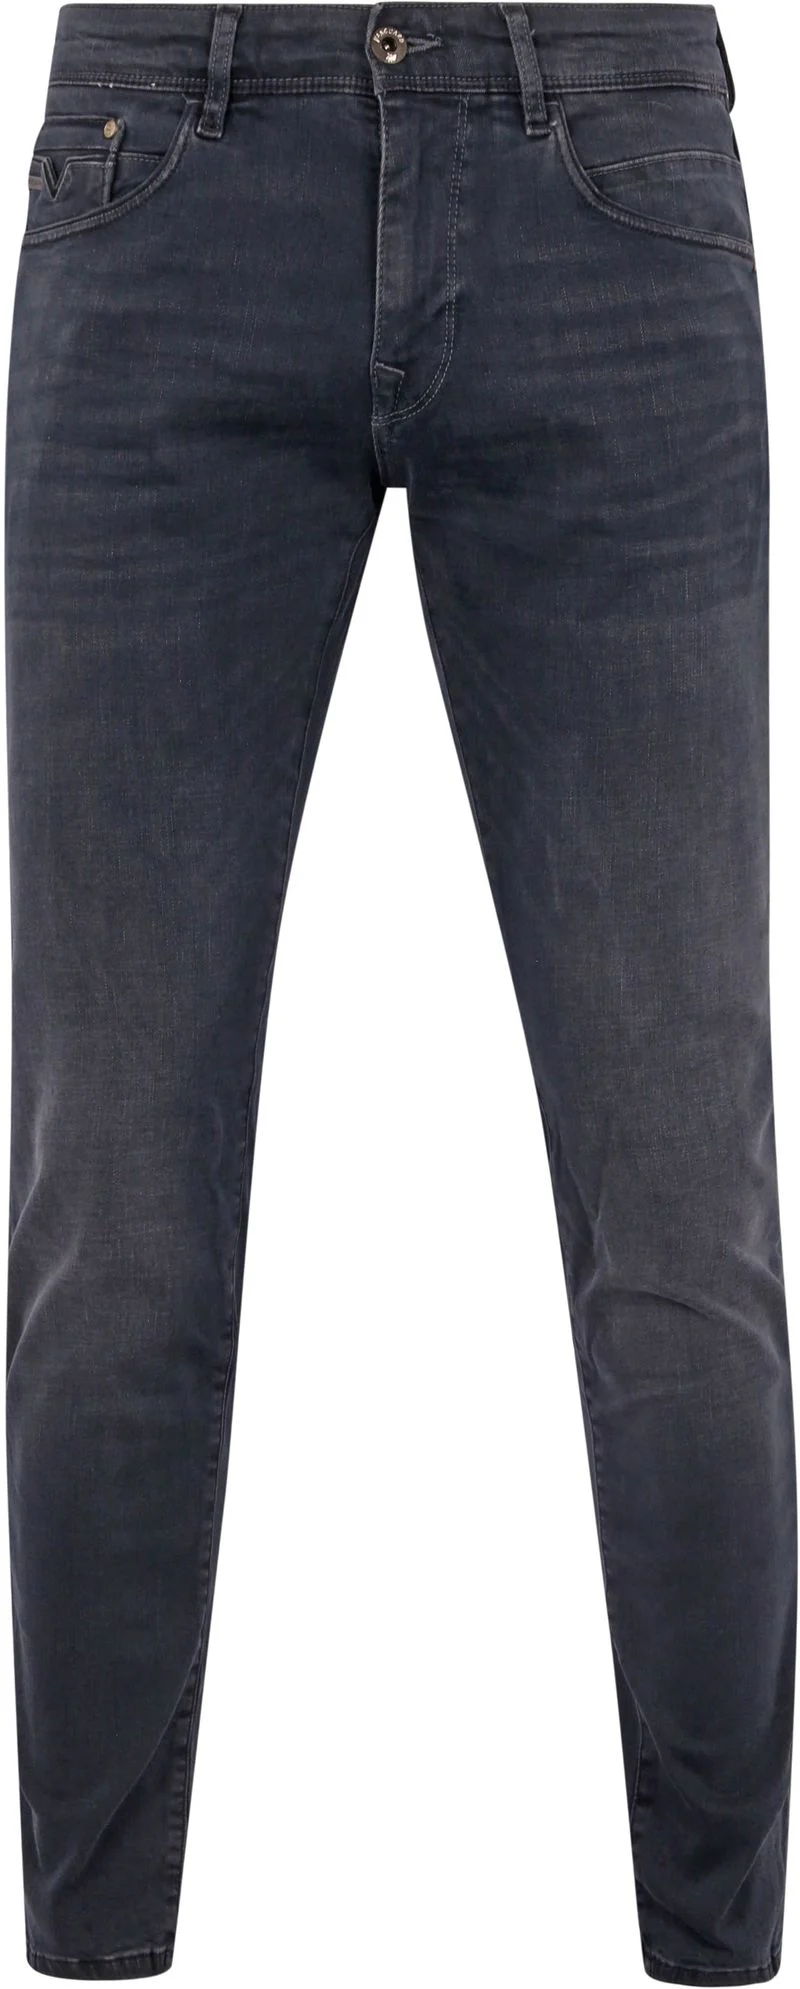 Vanguard Jeans V12 Rider Anthrazit ODB - Größe W 36 - L 32 günstig online kaufen